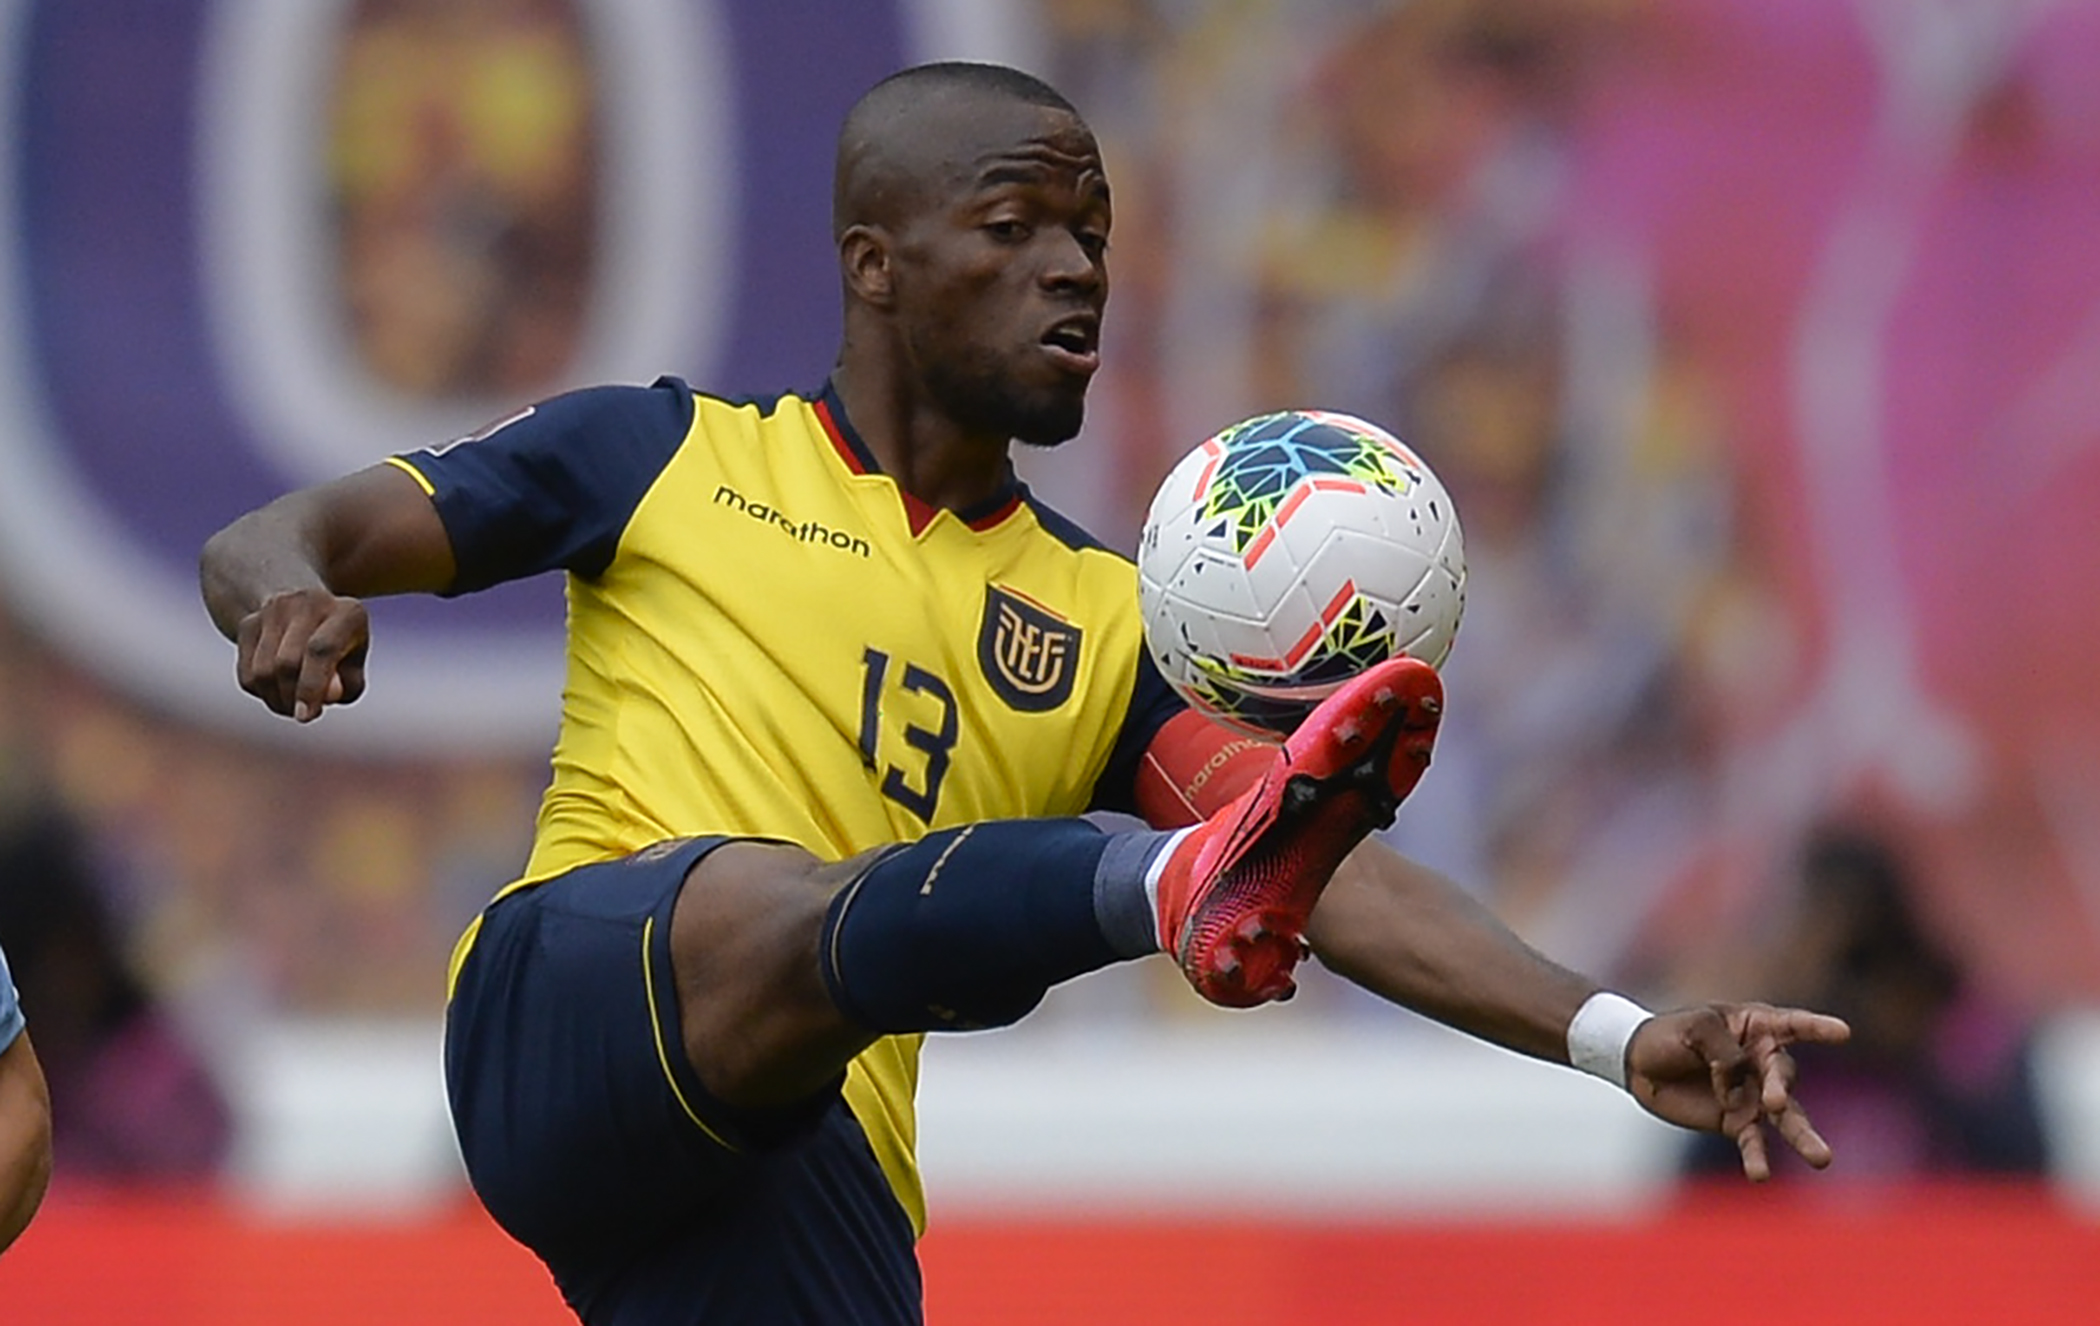 Selección Colombia: resultado de las pruebas de covid-19 en Quito - Fútbol  Internacional - Deportes 